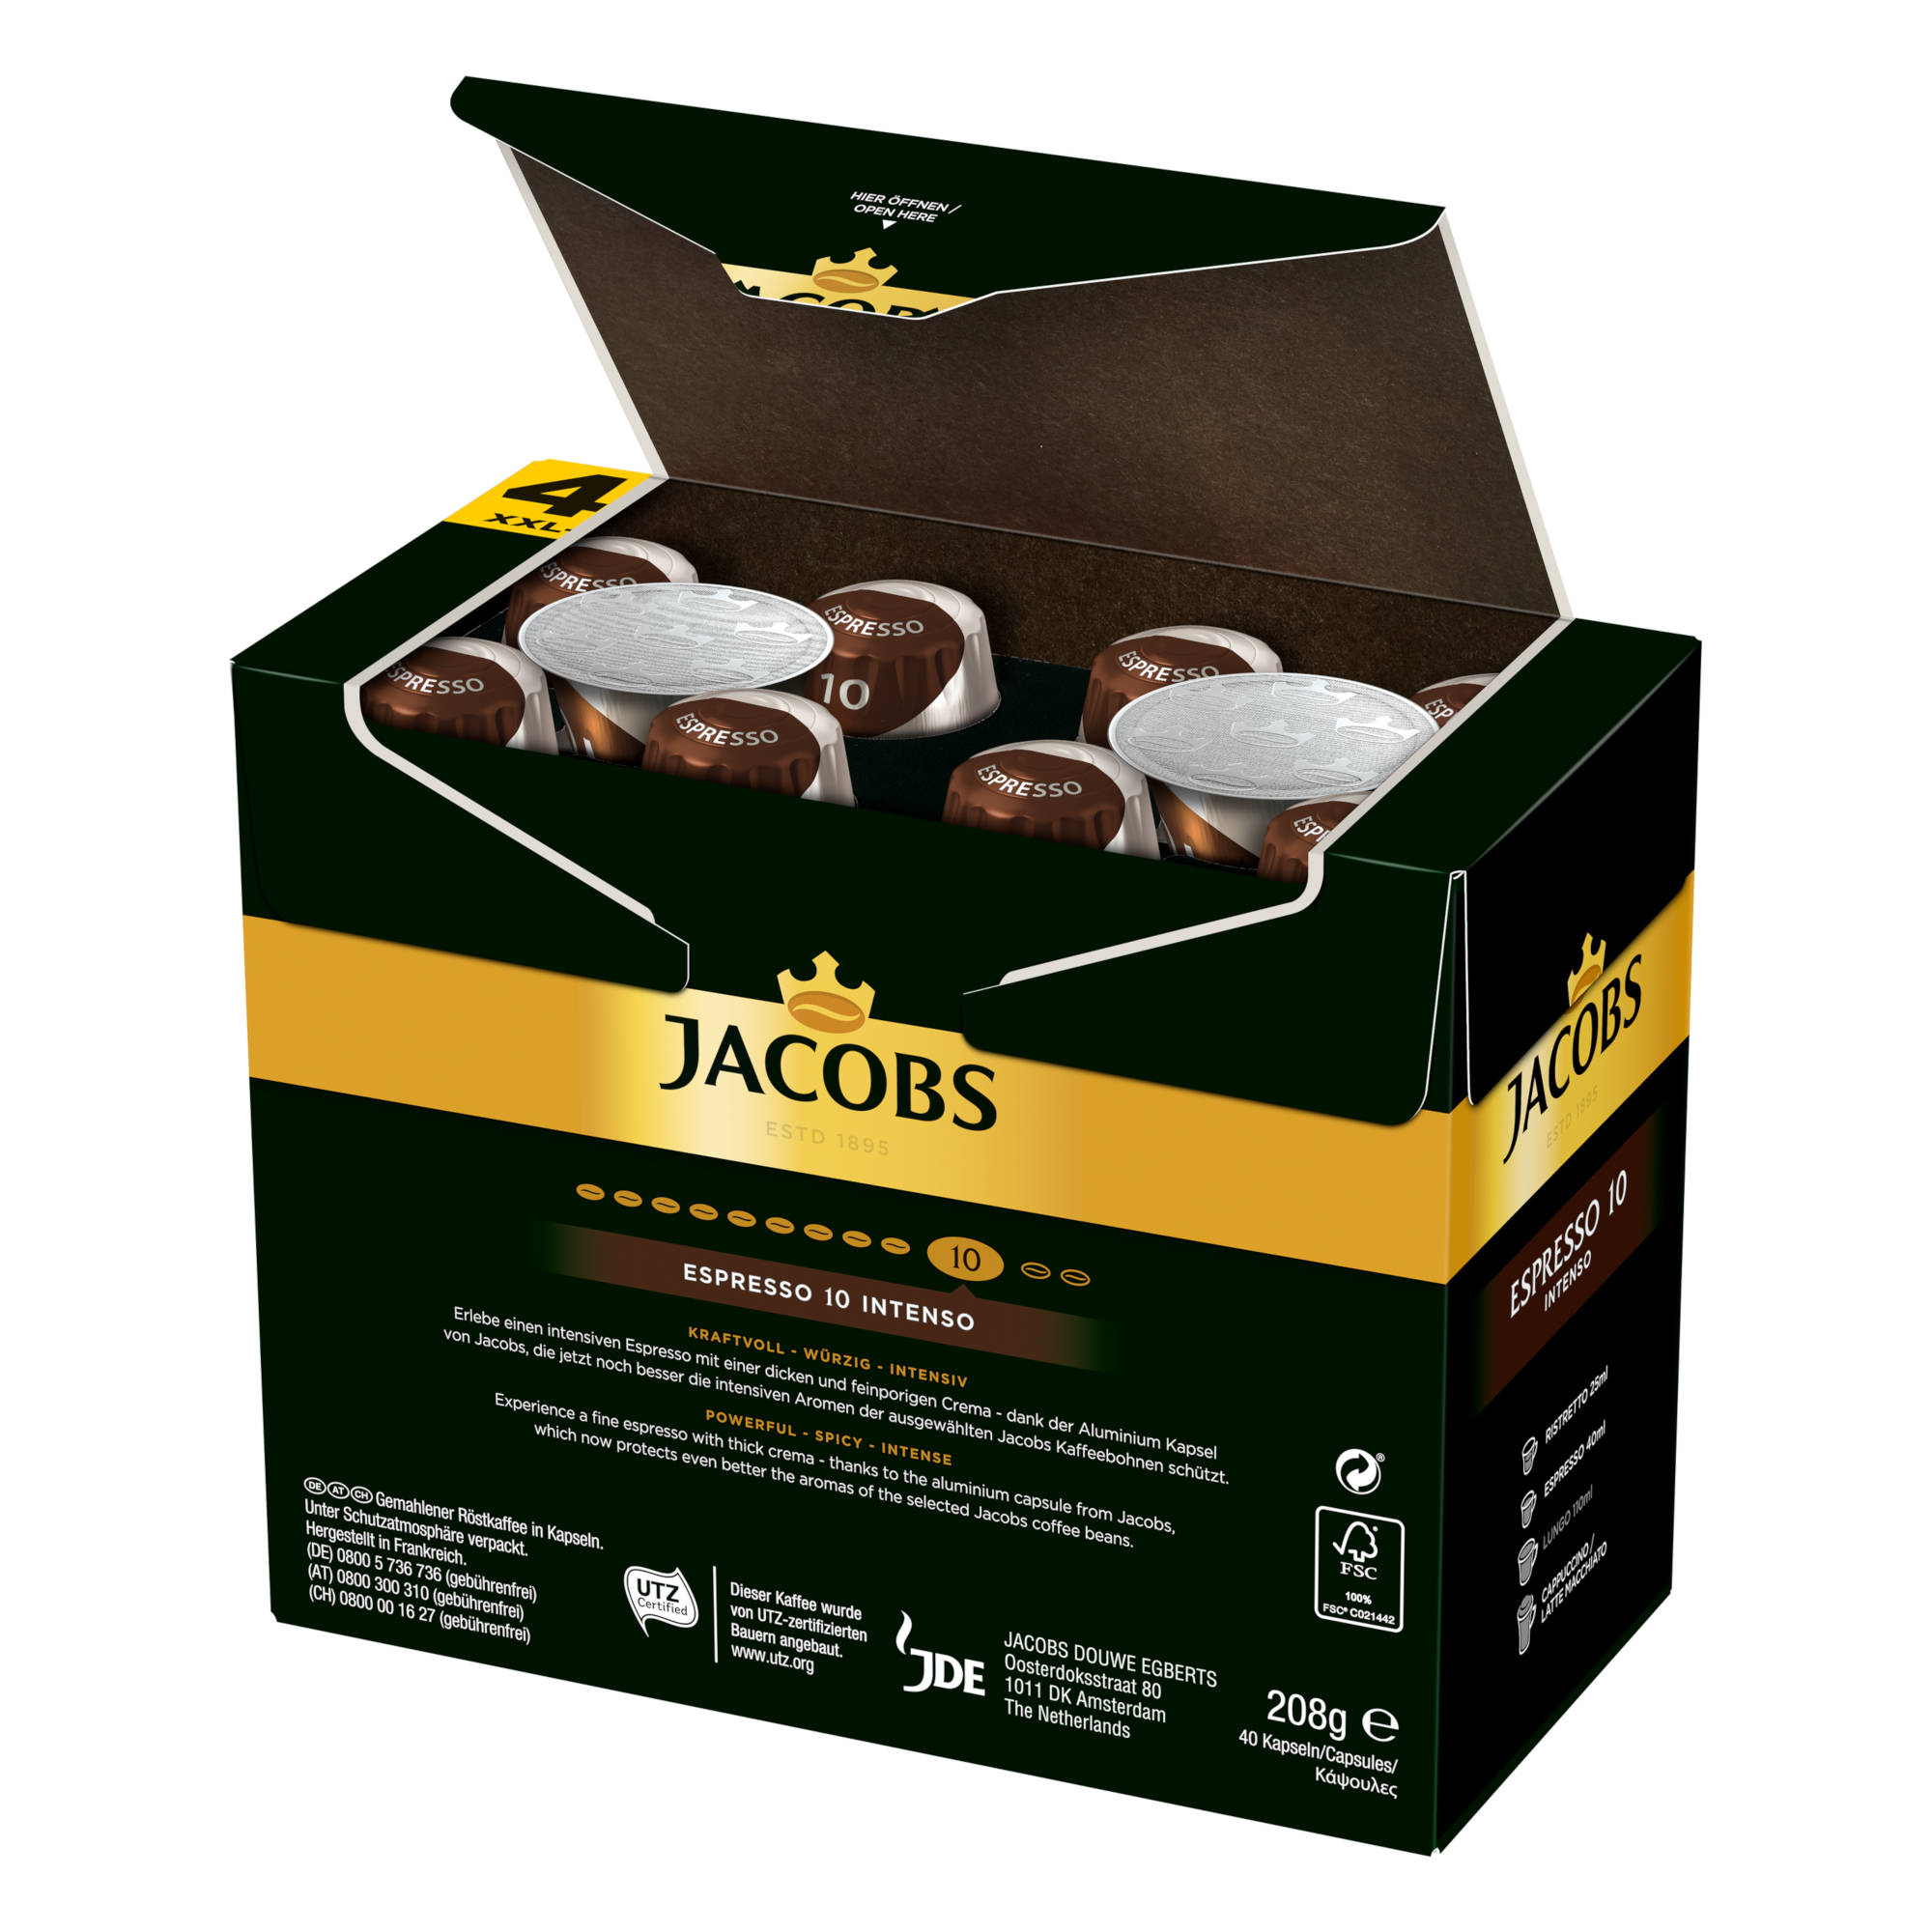 JACOBS Espresso 10 kompatible x Nespresso®* Intenso 5 40 Kaffeekapseln System) (Nespresso XXL-Pack